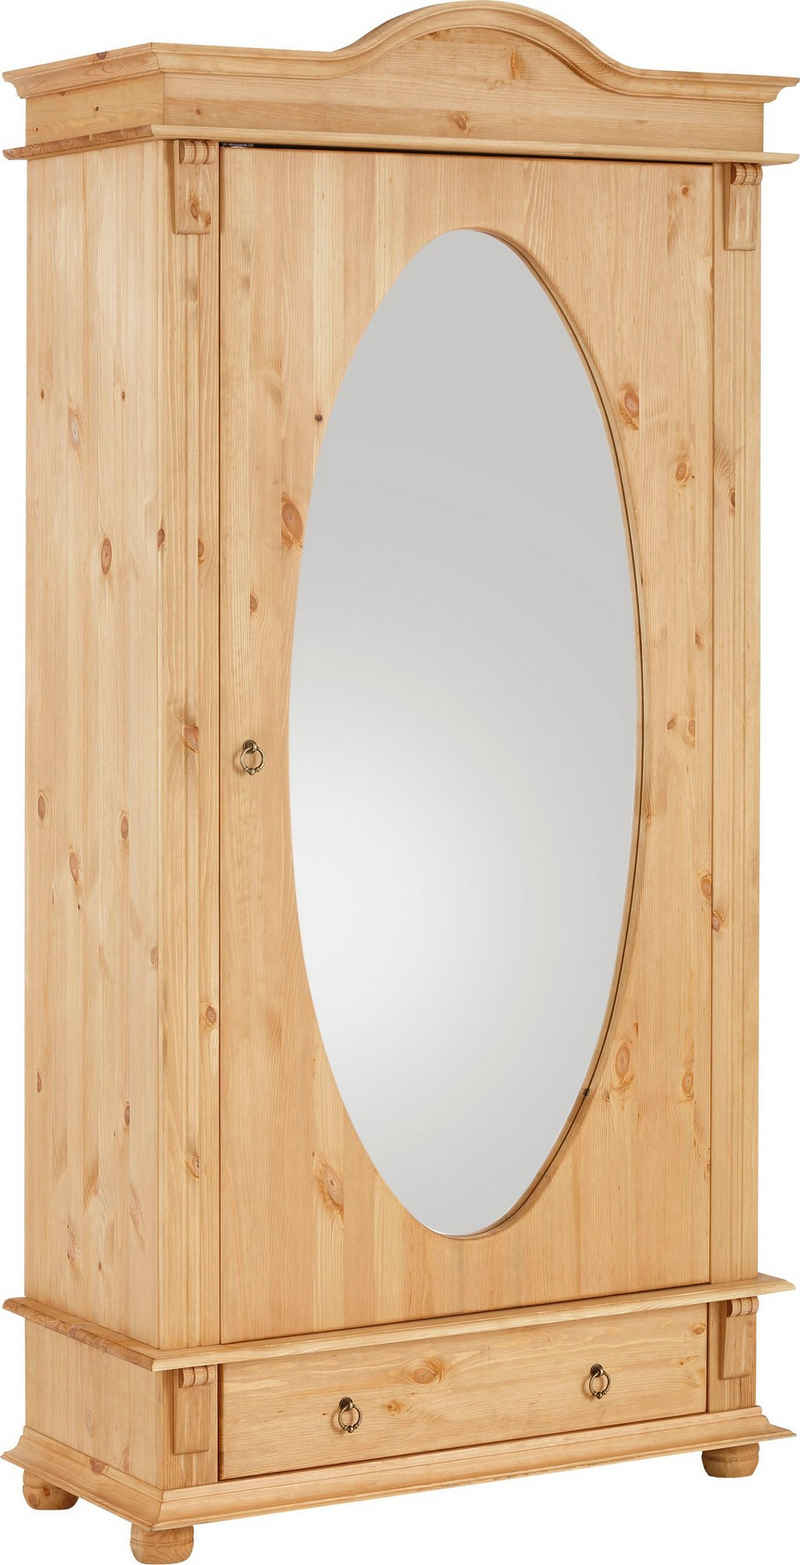 Home affaire Garderobenschrank »Florenz« mit Spiegel, aus massiver Kiefer, dekorative Fräsungen